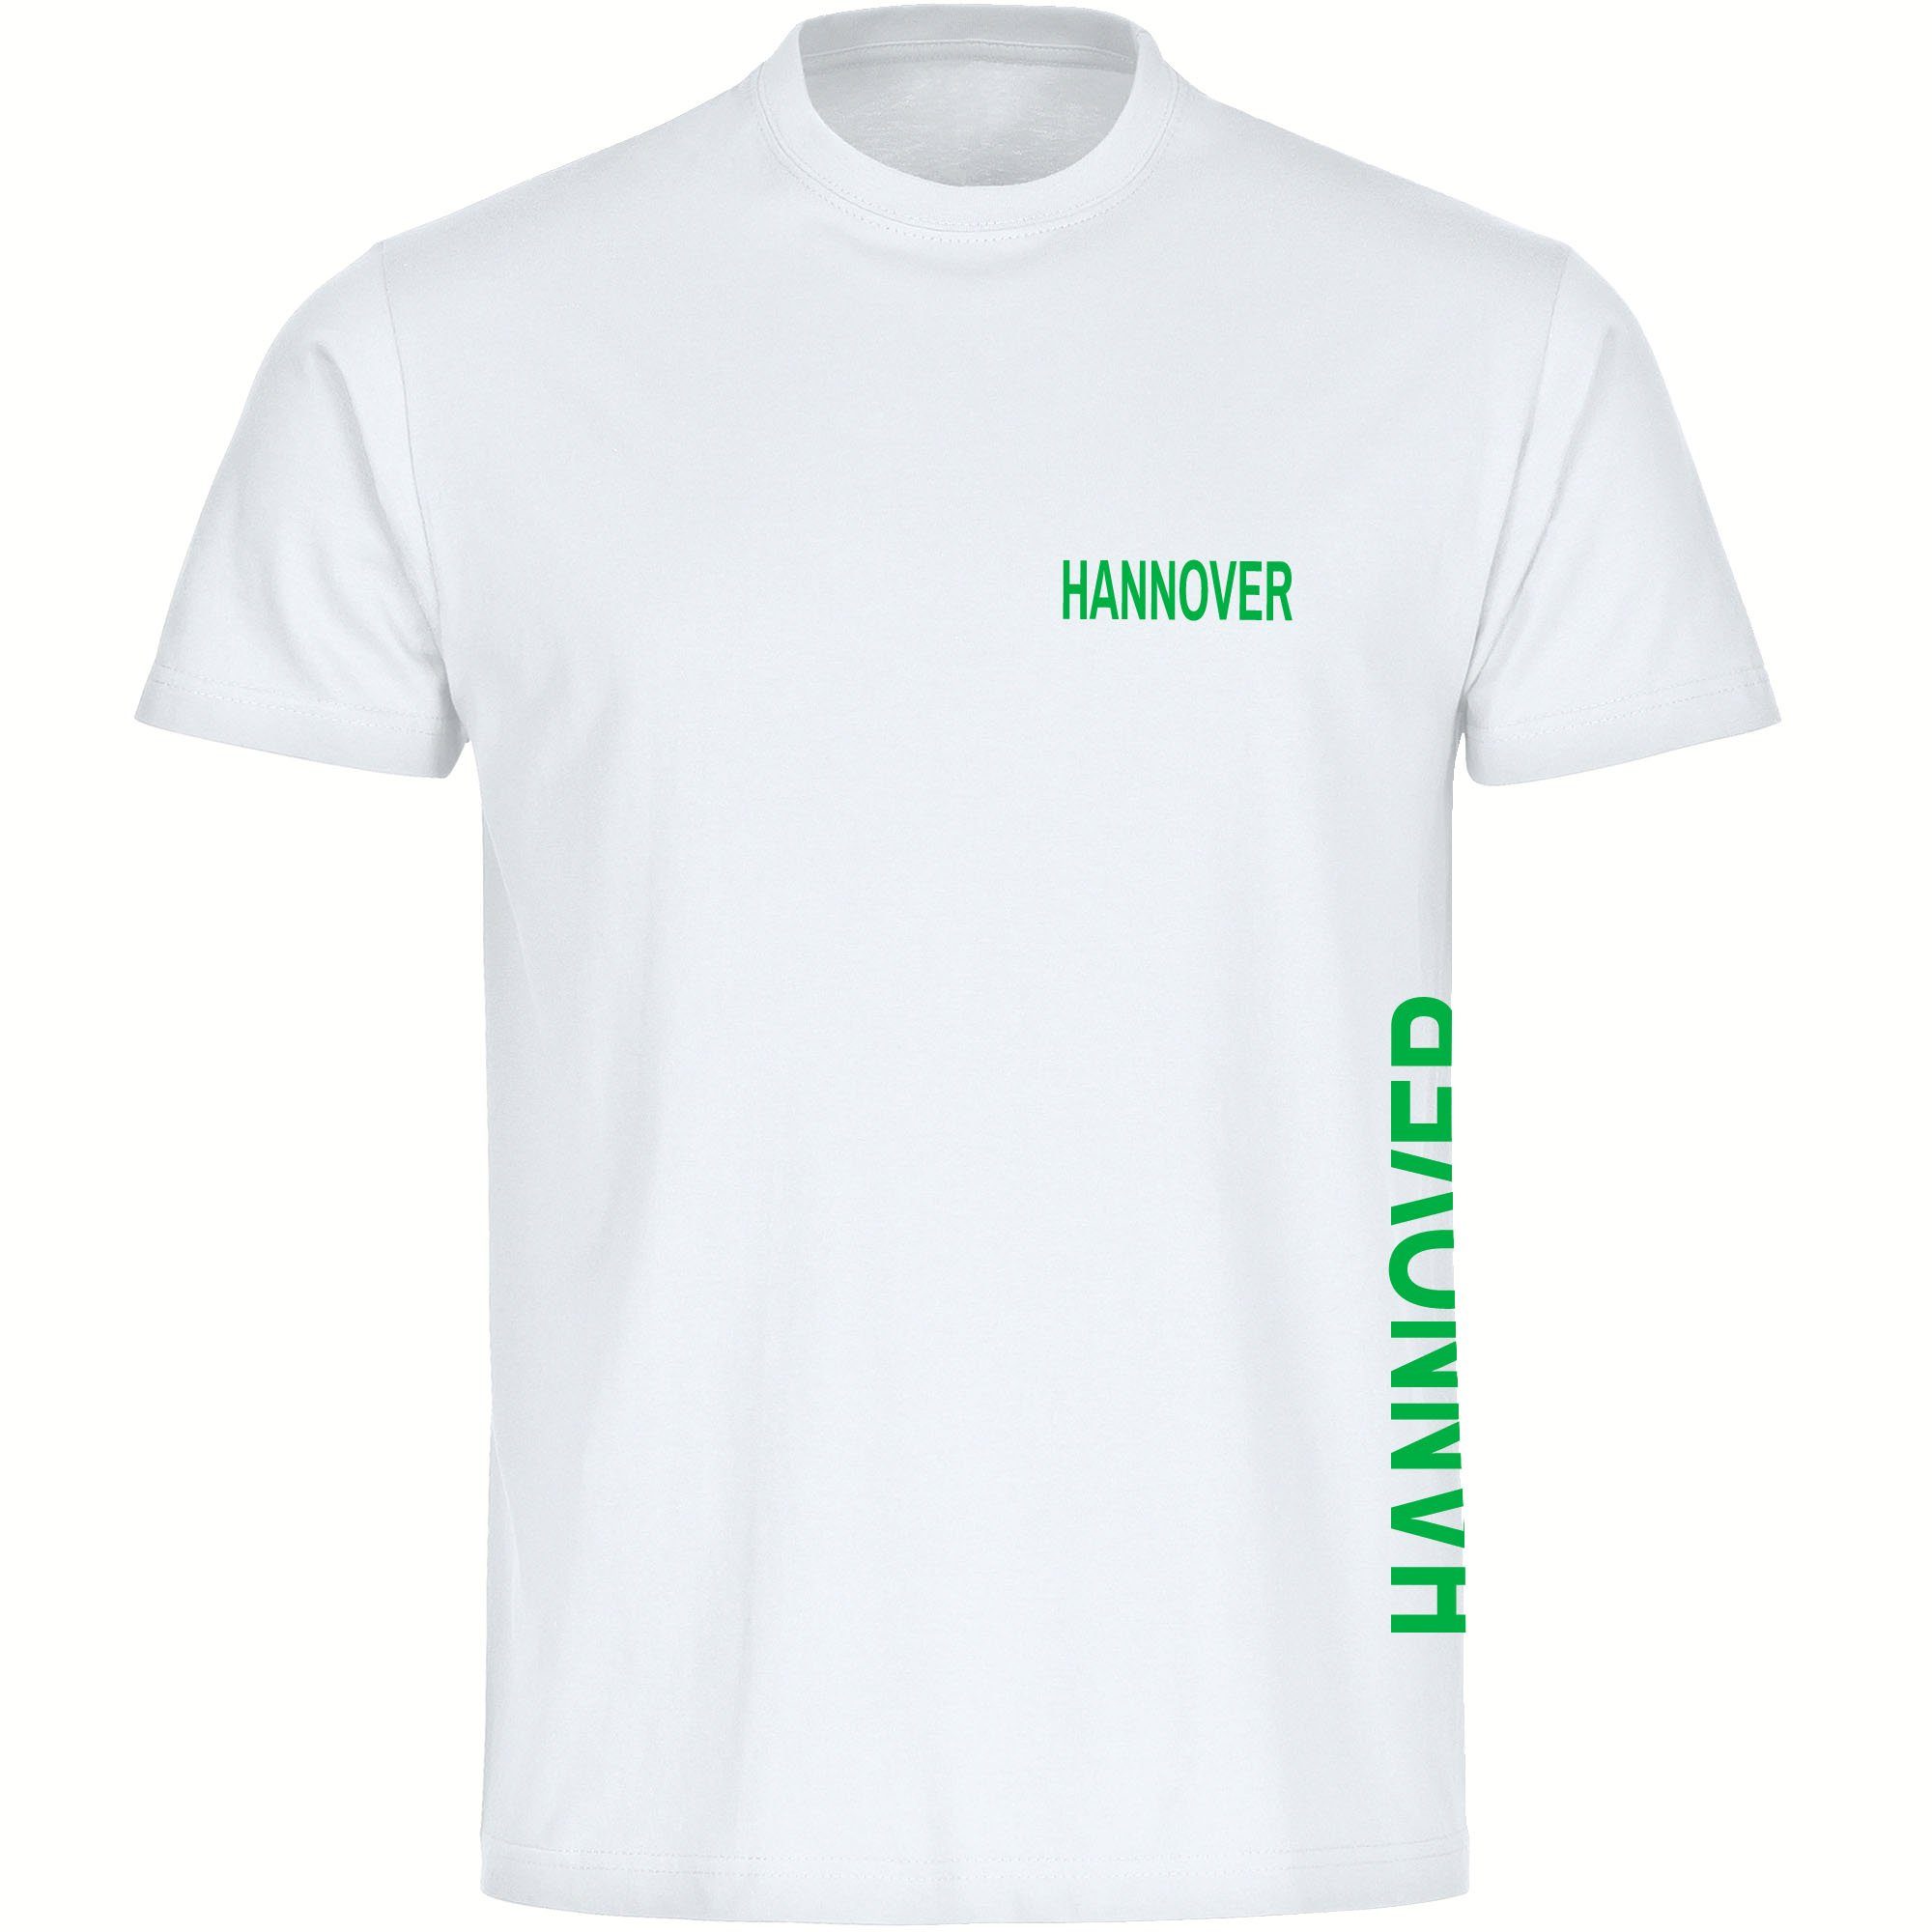 multifanshop T-Shirt Herren Hannover - Brust & Seite - Männer